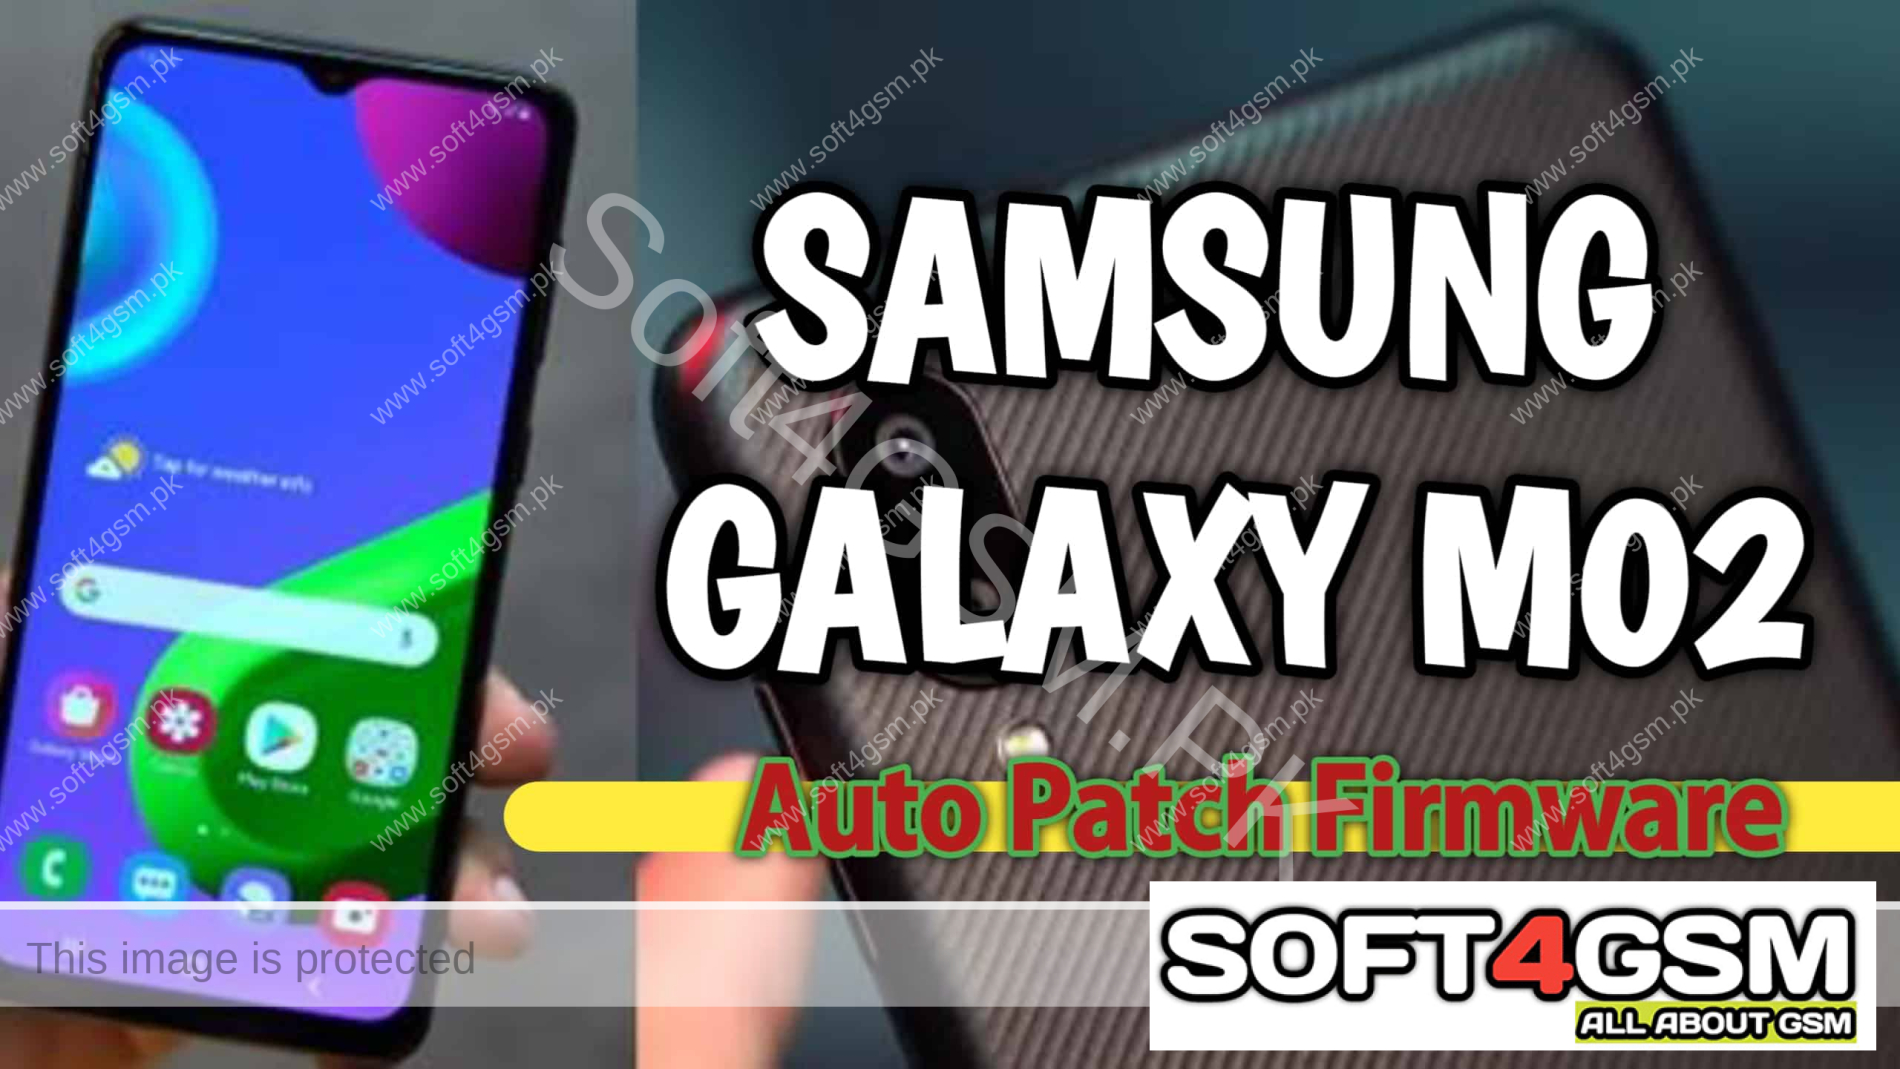 Galaxy M02 SM-M022G Auto Patch